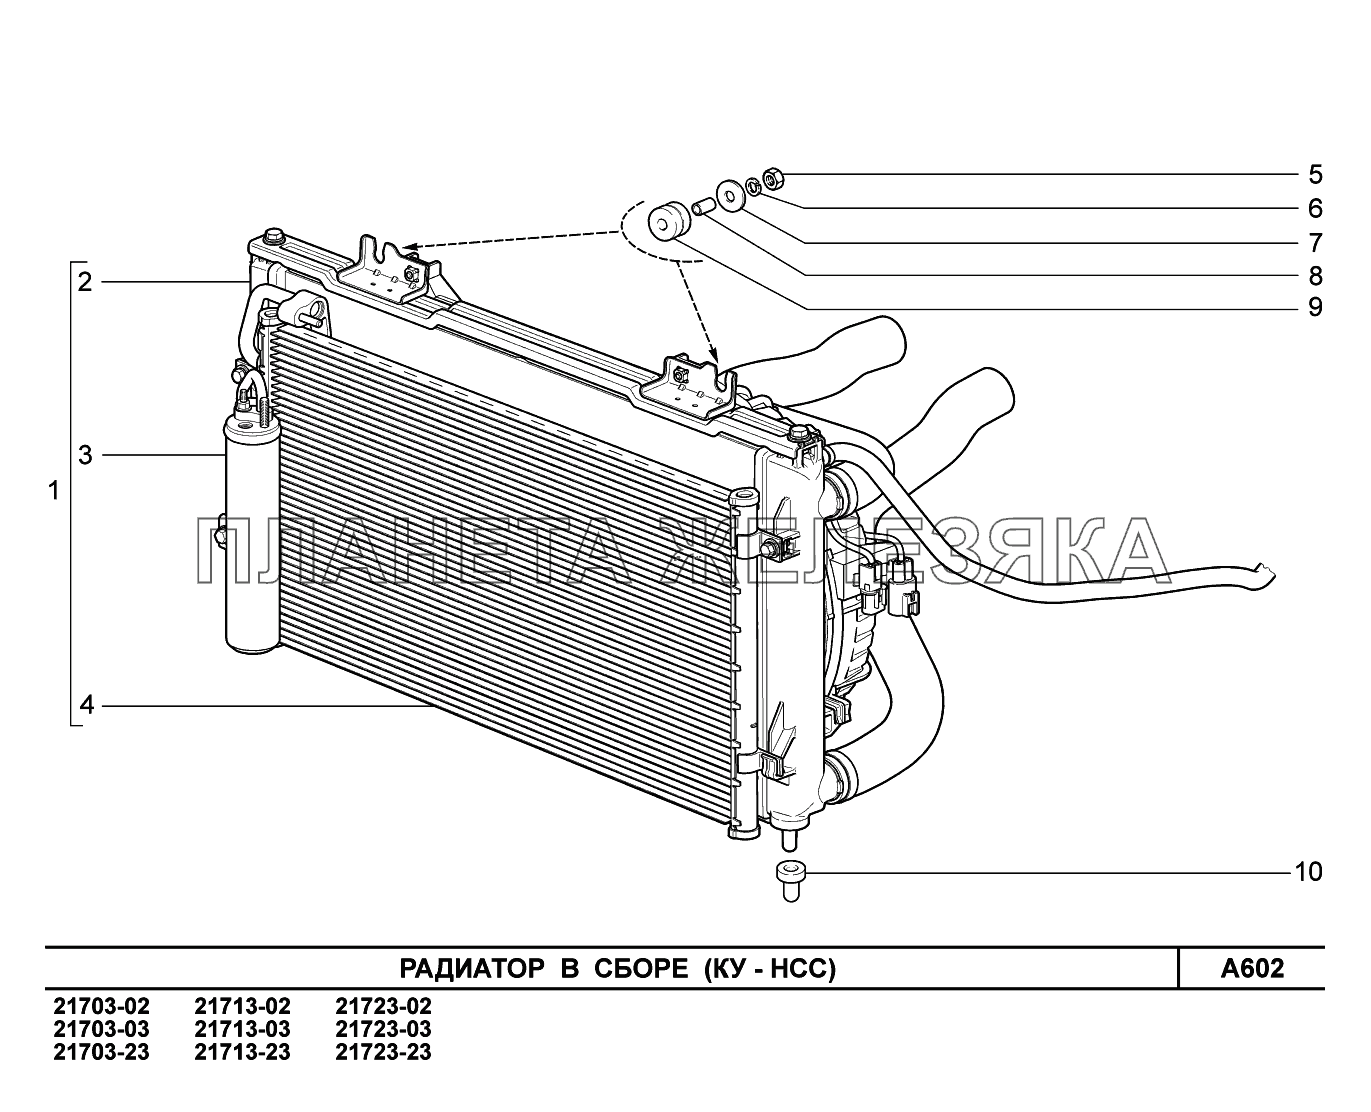 A602. Радиатор в сборе ВАЗ-2170 